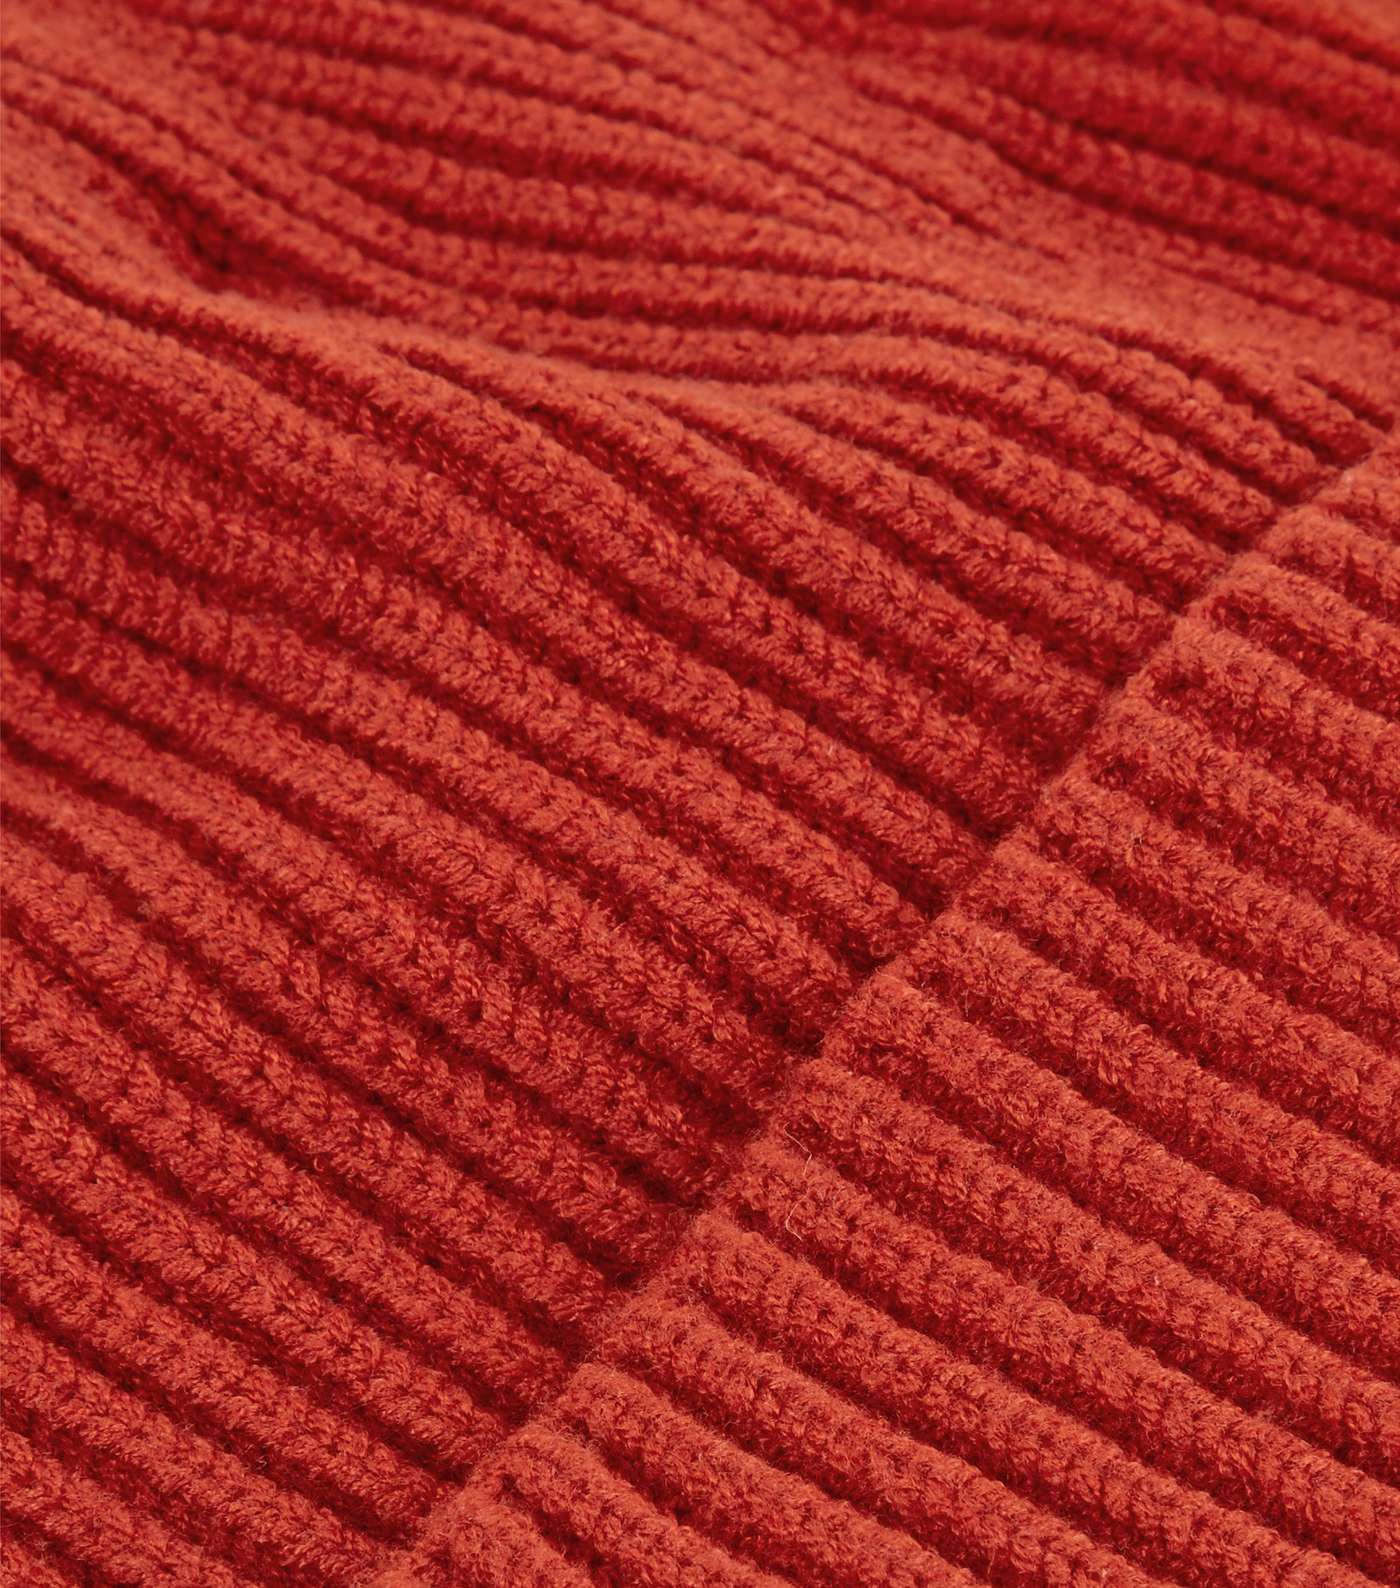 Orange Ribbed Knit Beanie Image 3